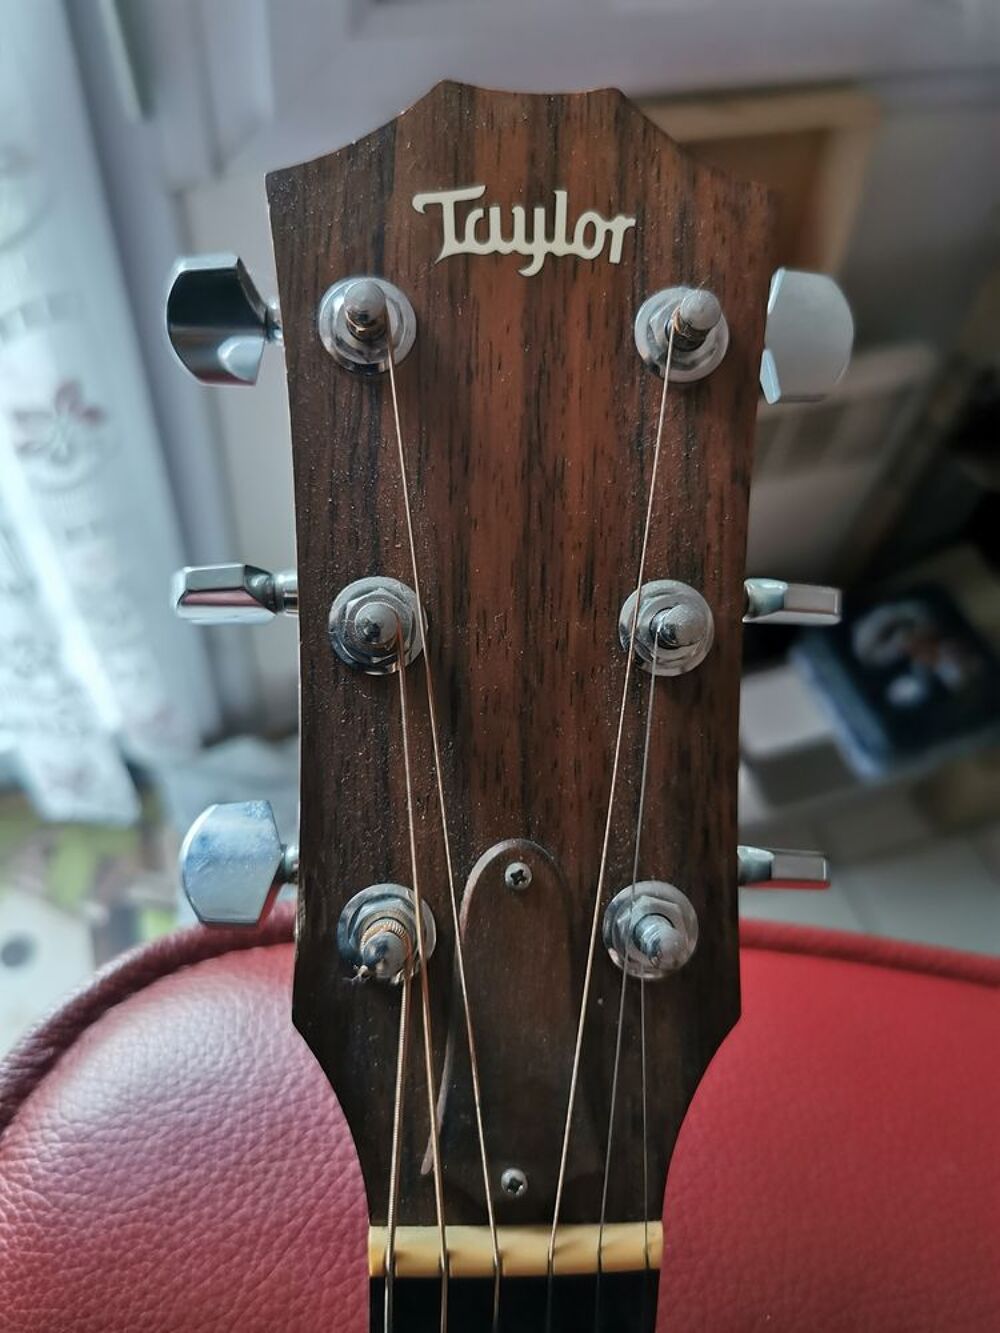 Guitare Taylor Instruments de musique